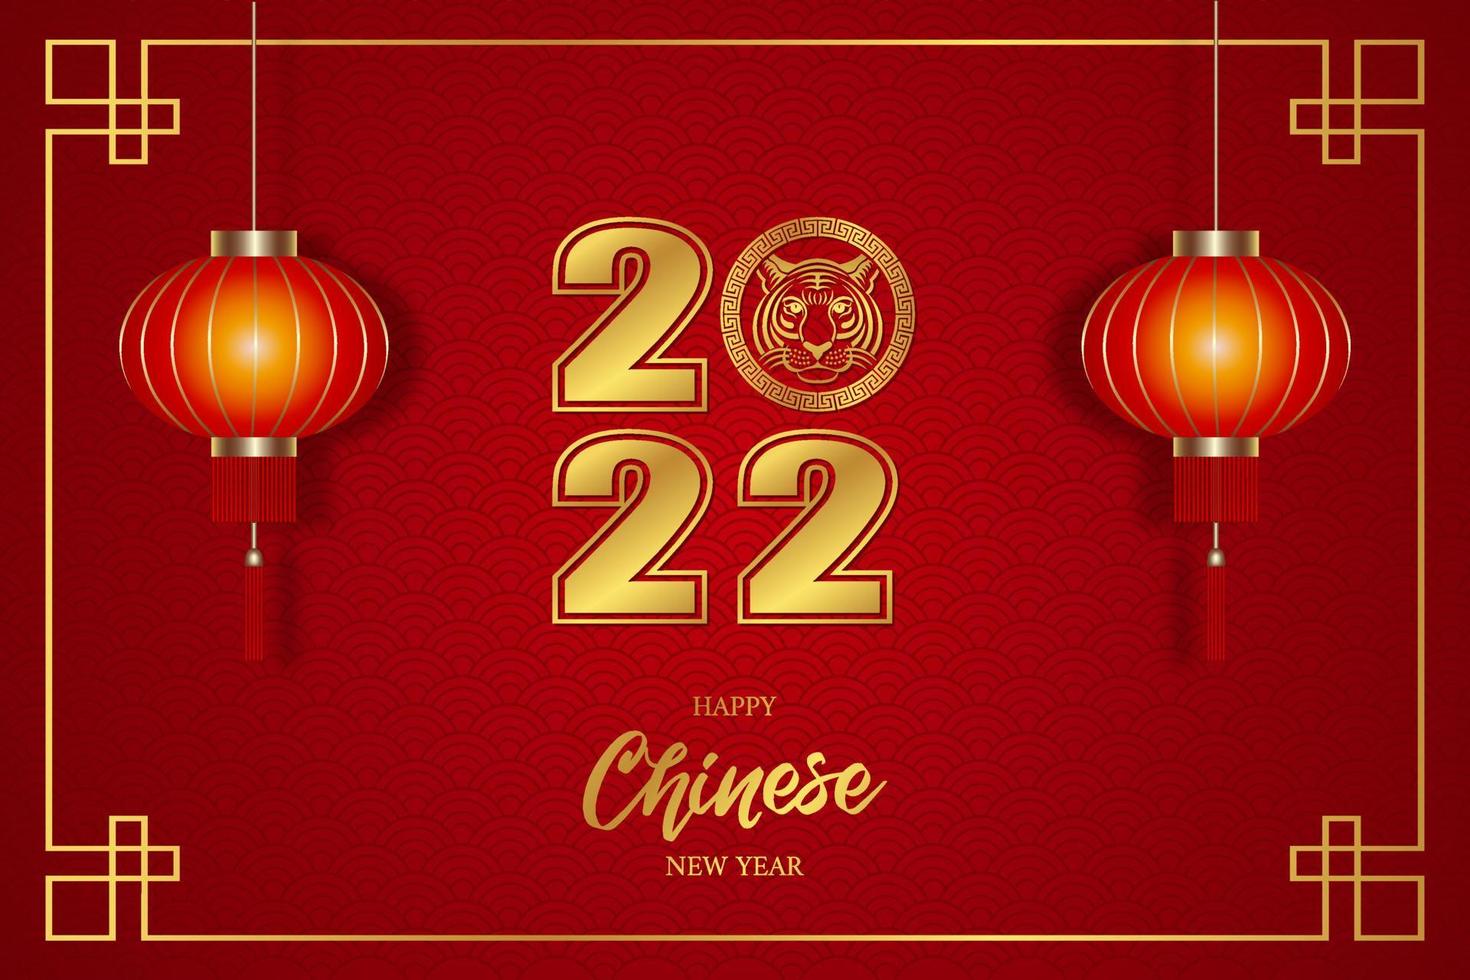 fond de nouvel an chinois avec des décorations en or et des lanternes rouges. joyeux nouvel an chinois 2022 vecteur